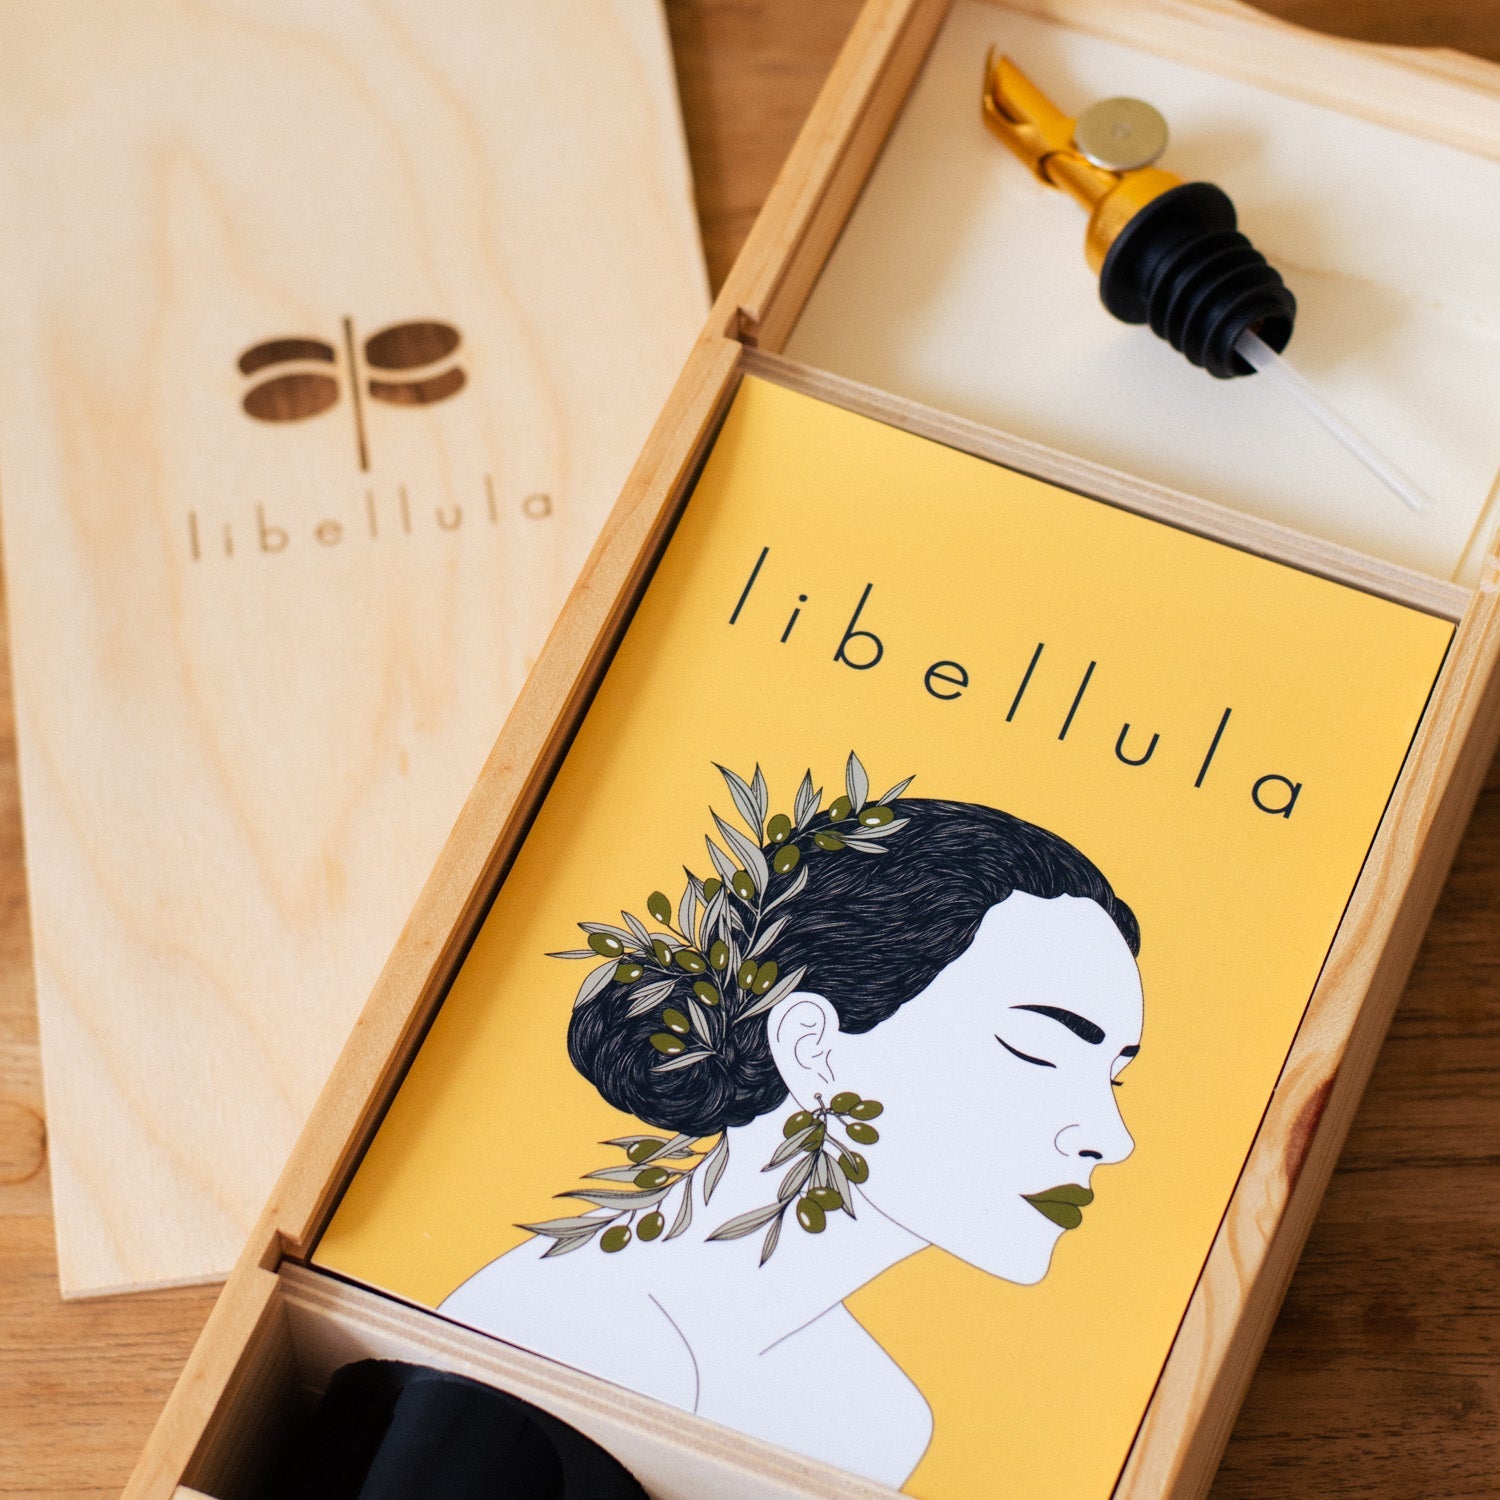 The Farmer's Olive Oil Box - Libellula